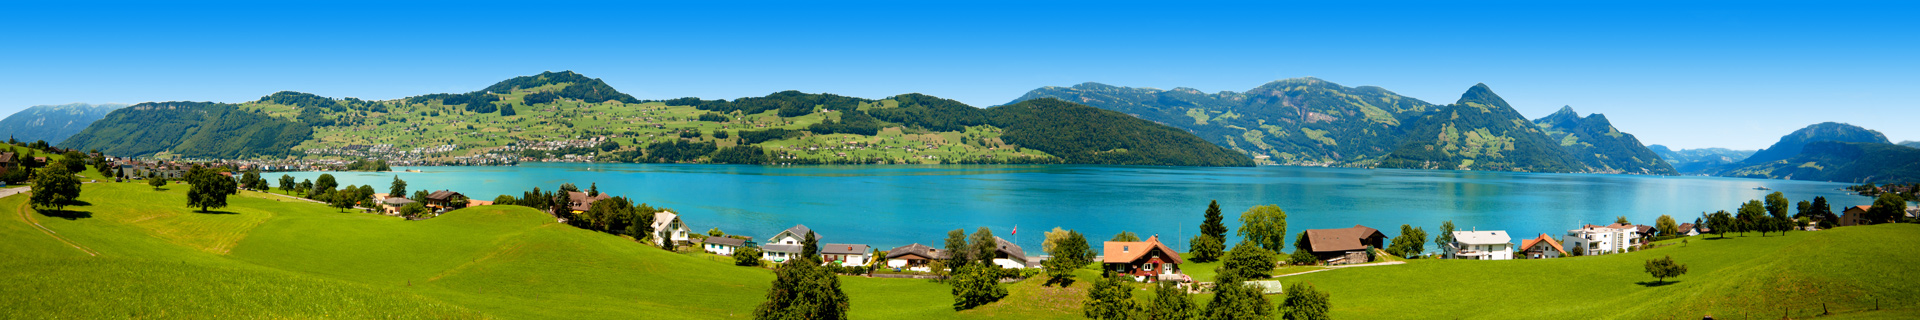 Uitzicht op een prachtig meer in Zwitserland